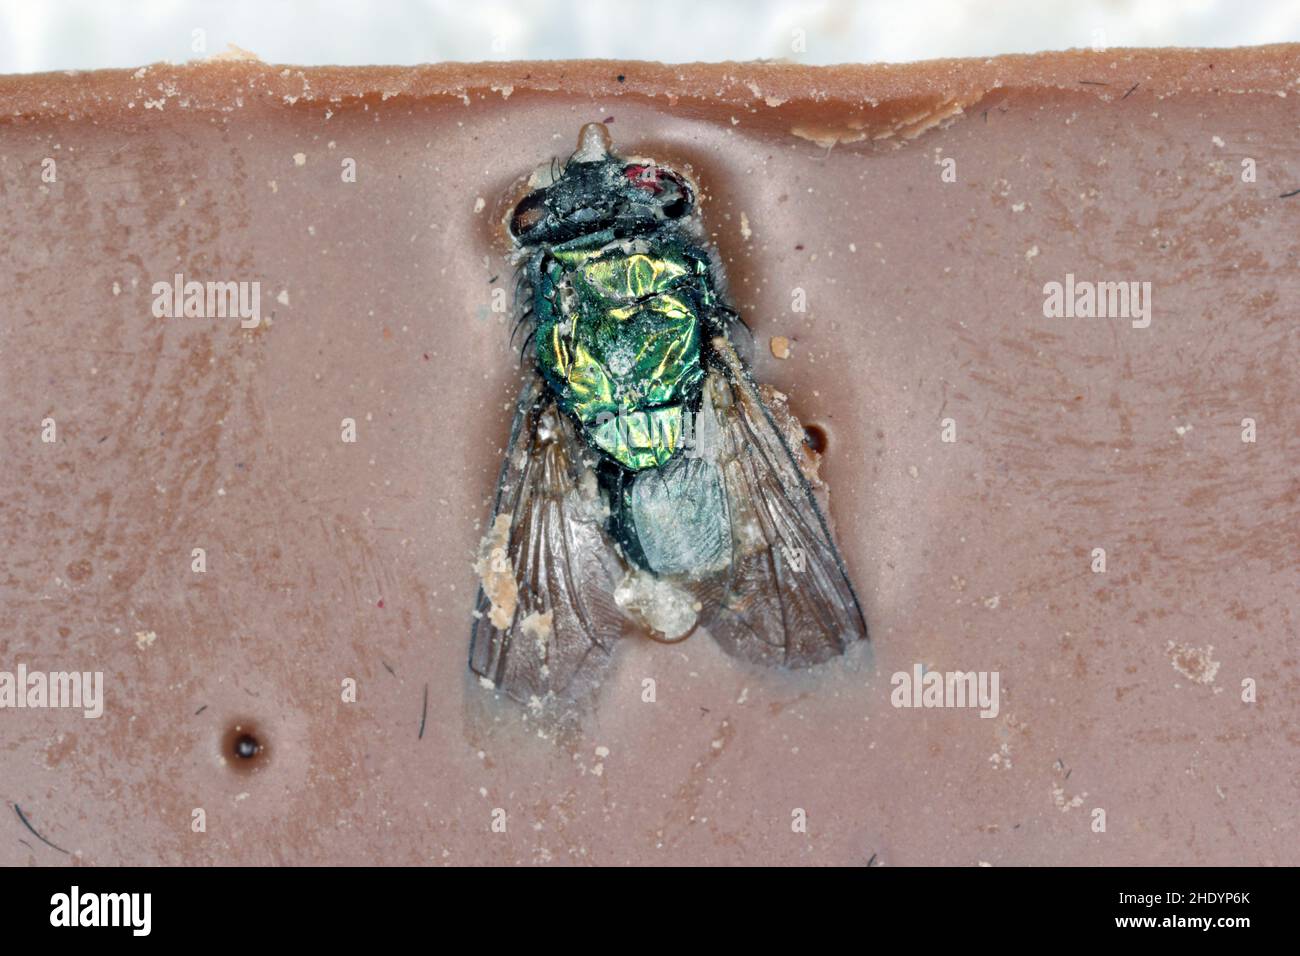 Eine Fliege, die in eine Schokoladenriegel eingemischt wurde. Insekt in Lebensmitteln. Stockfoto